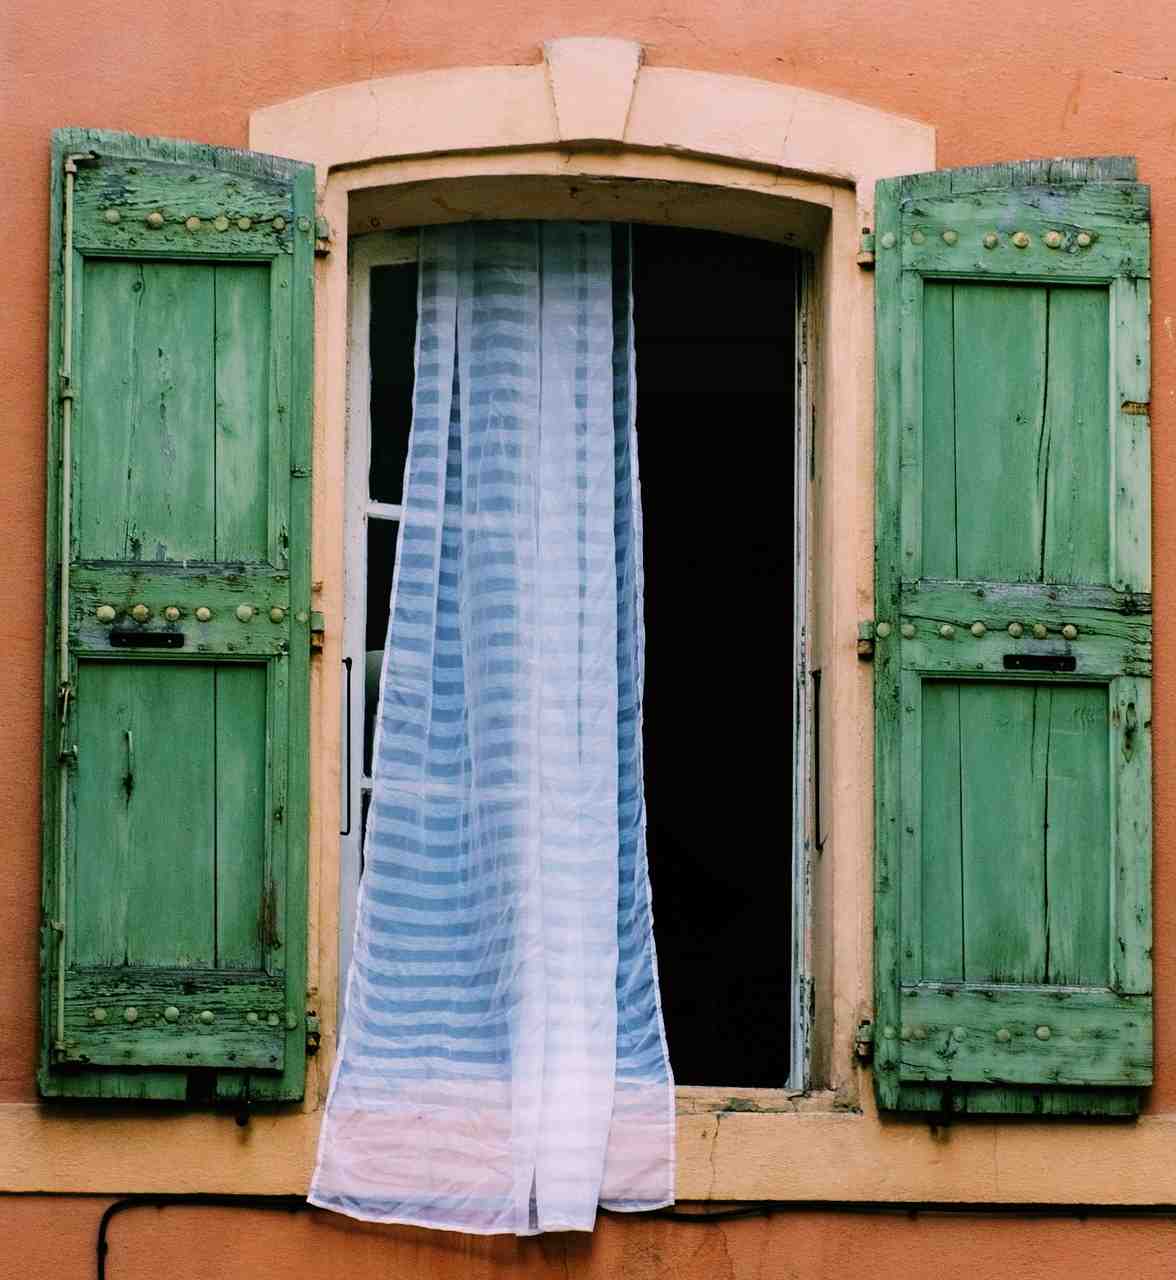 fenêtres à la française, des rideaux de dentelle, volets en bois